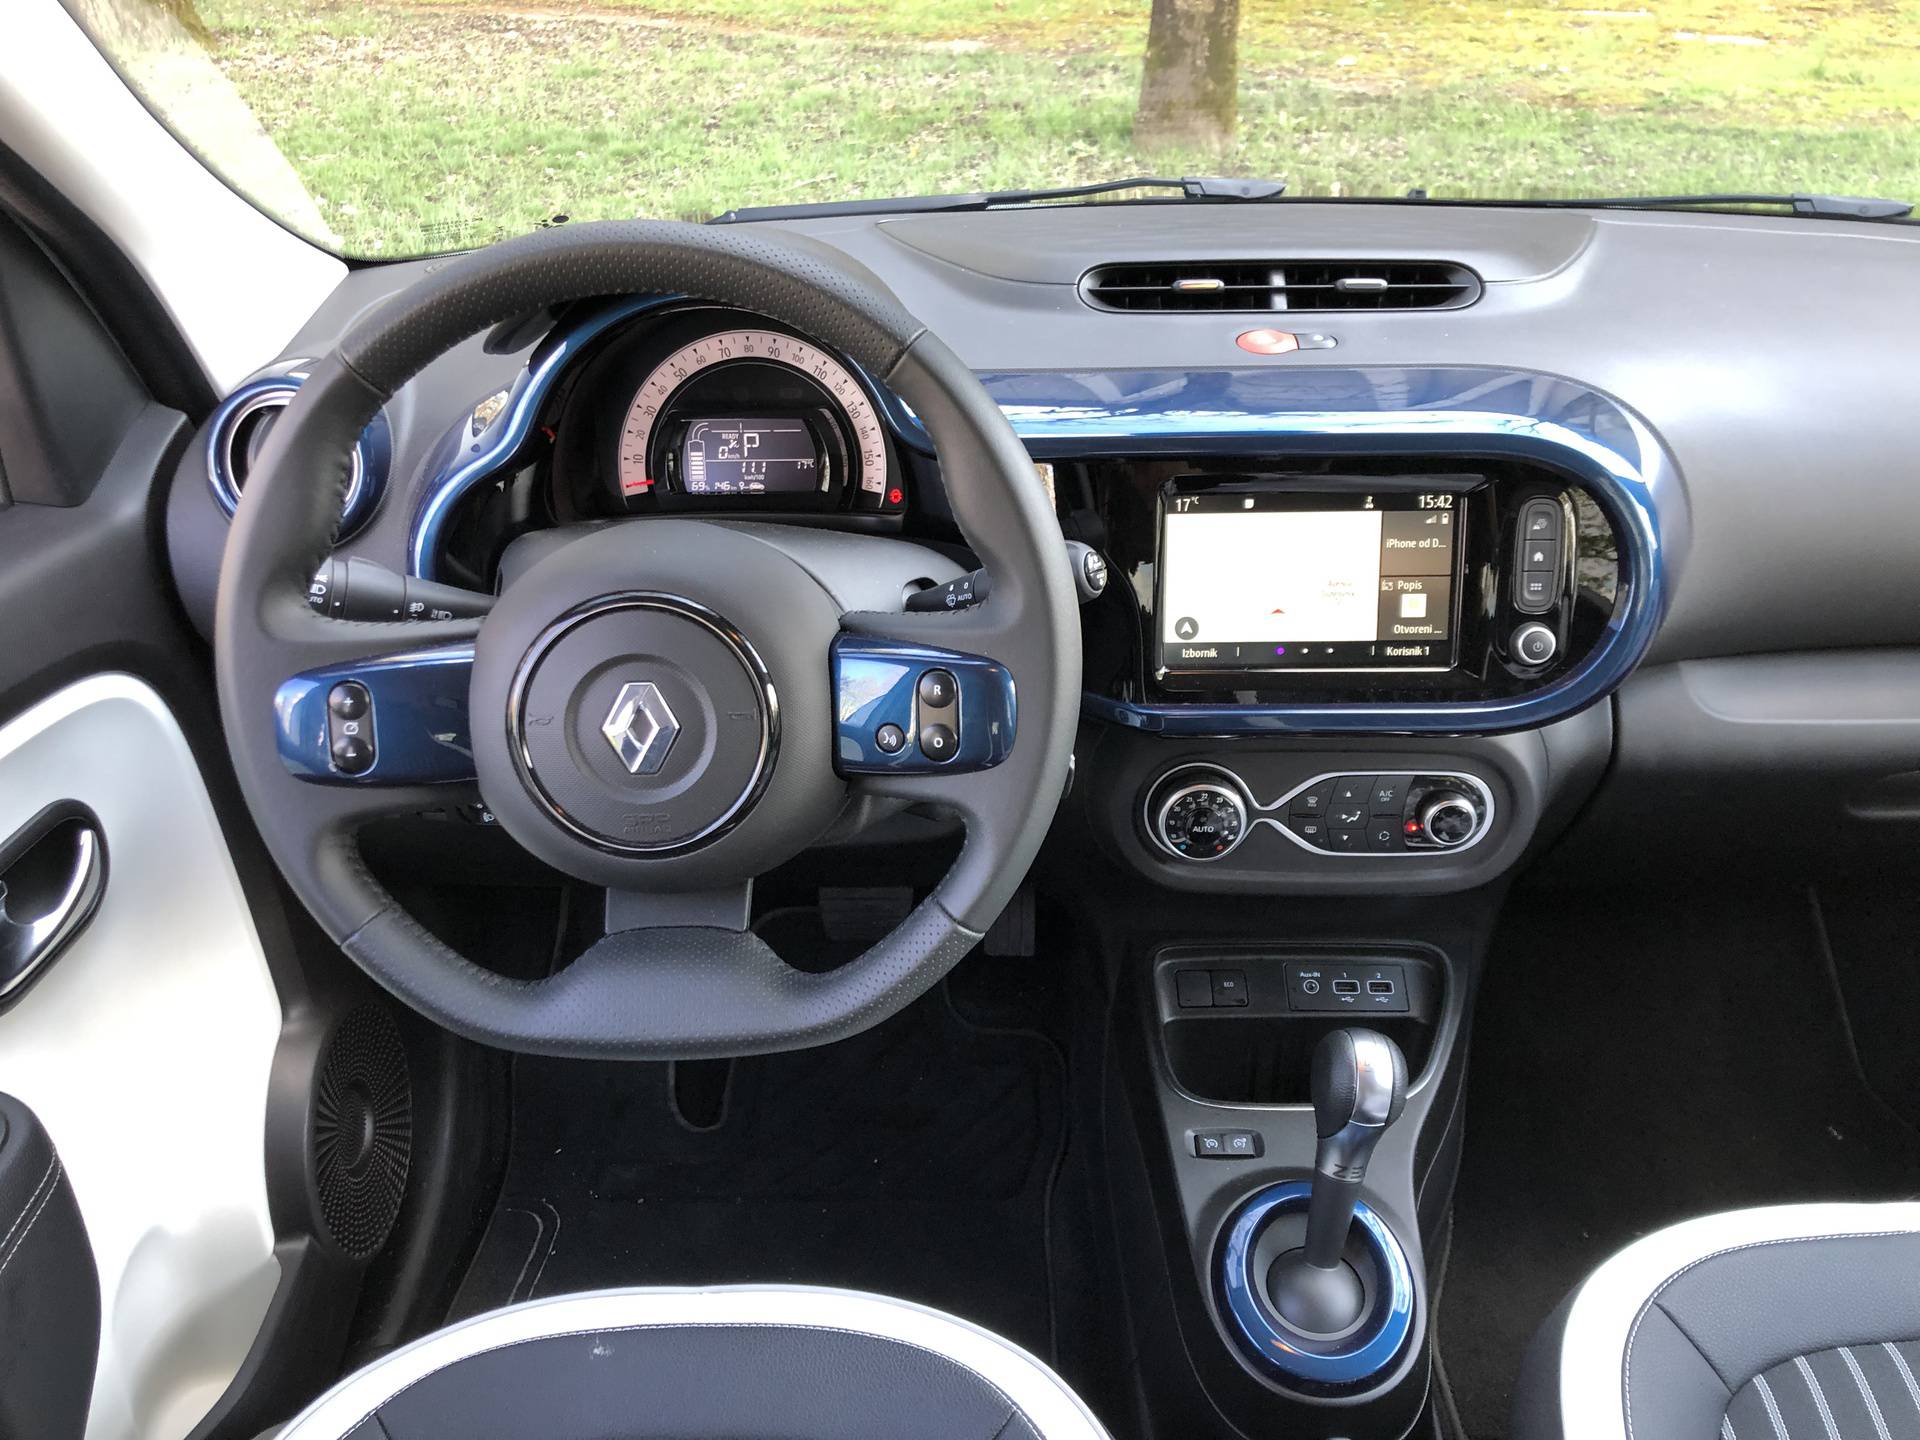 Renault Twingo - električni auto za grad i to po 'cijeni' benzinca